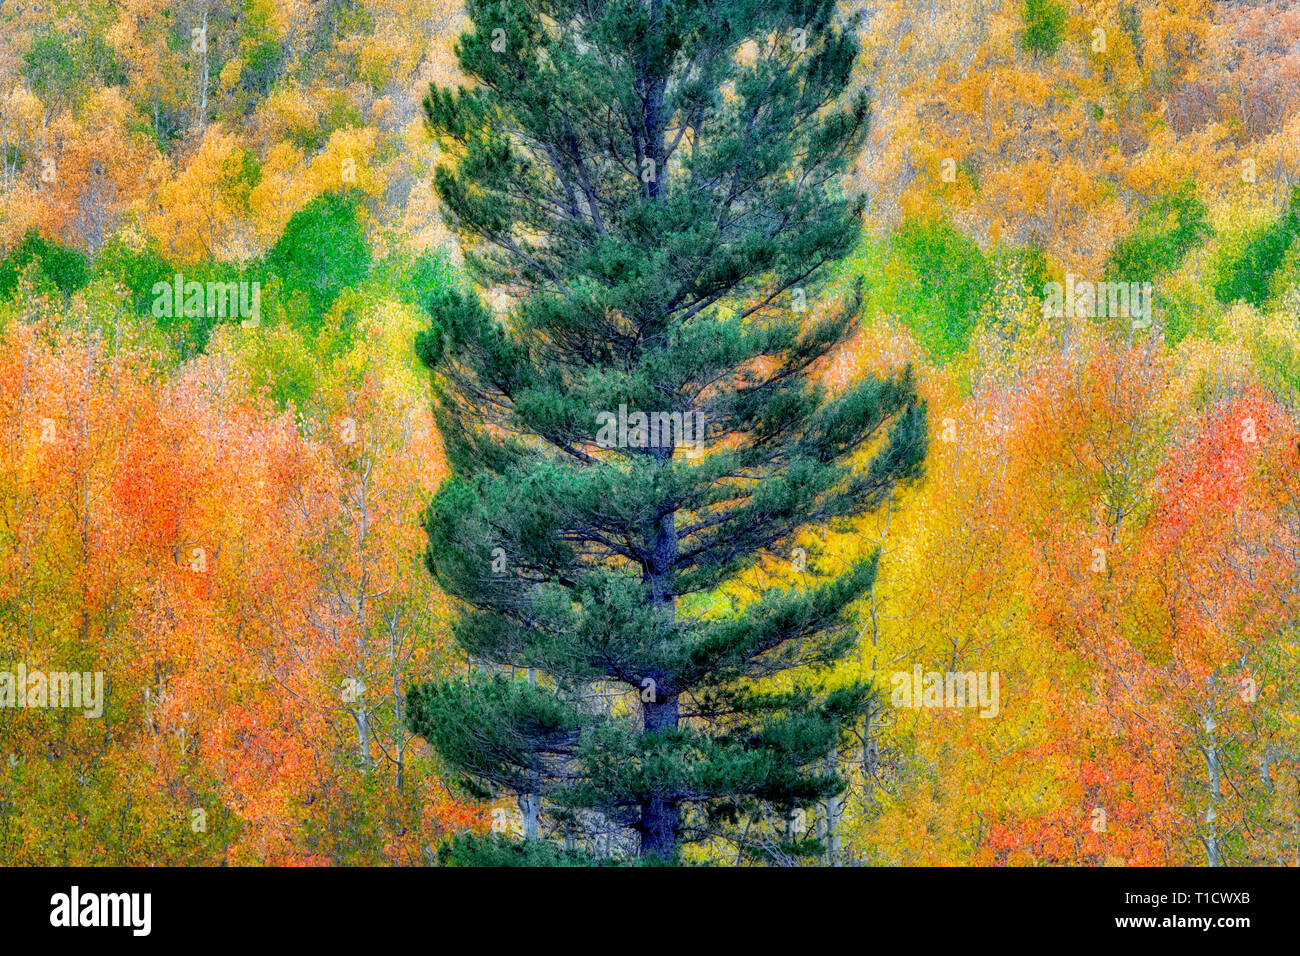 Forêt mixte de trembles en couleurs d'automne et de sapins. Inyo National Forest. Californie Banque D'Images